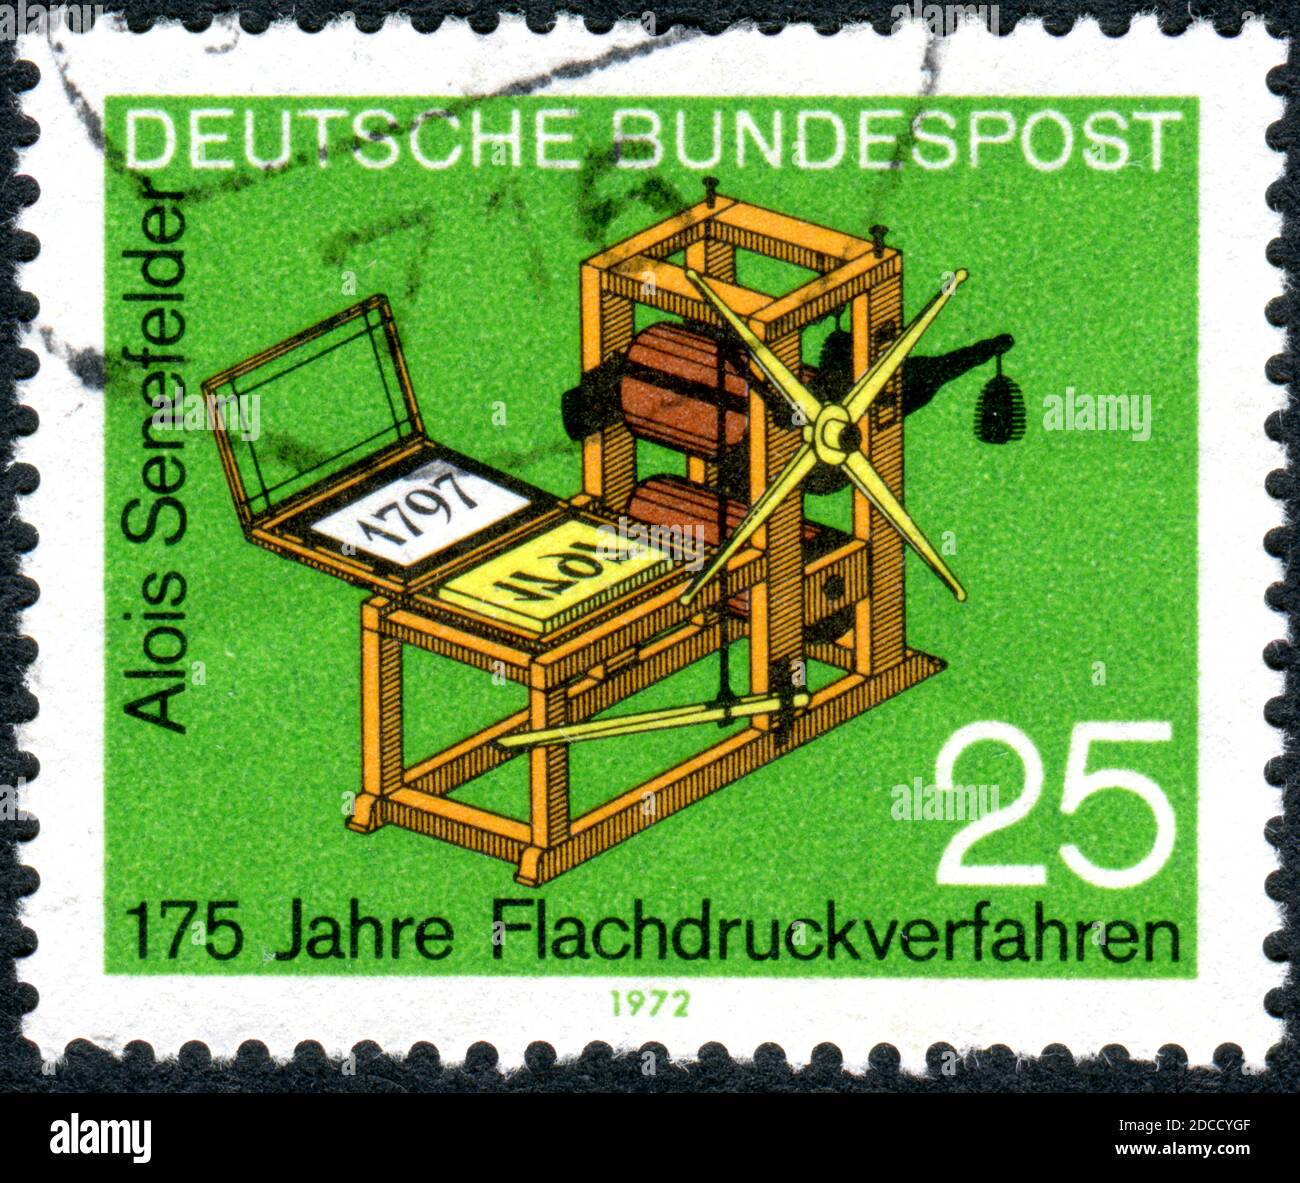 ALLEMAGNE - VERS 1972: Un timbre imprimé en Allemagne, montre la presse lithographique d'Alois Senefelder, vers 1972 Banque D'Images